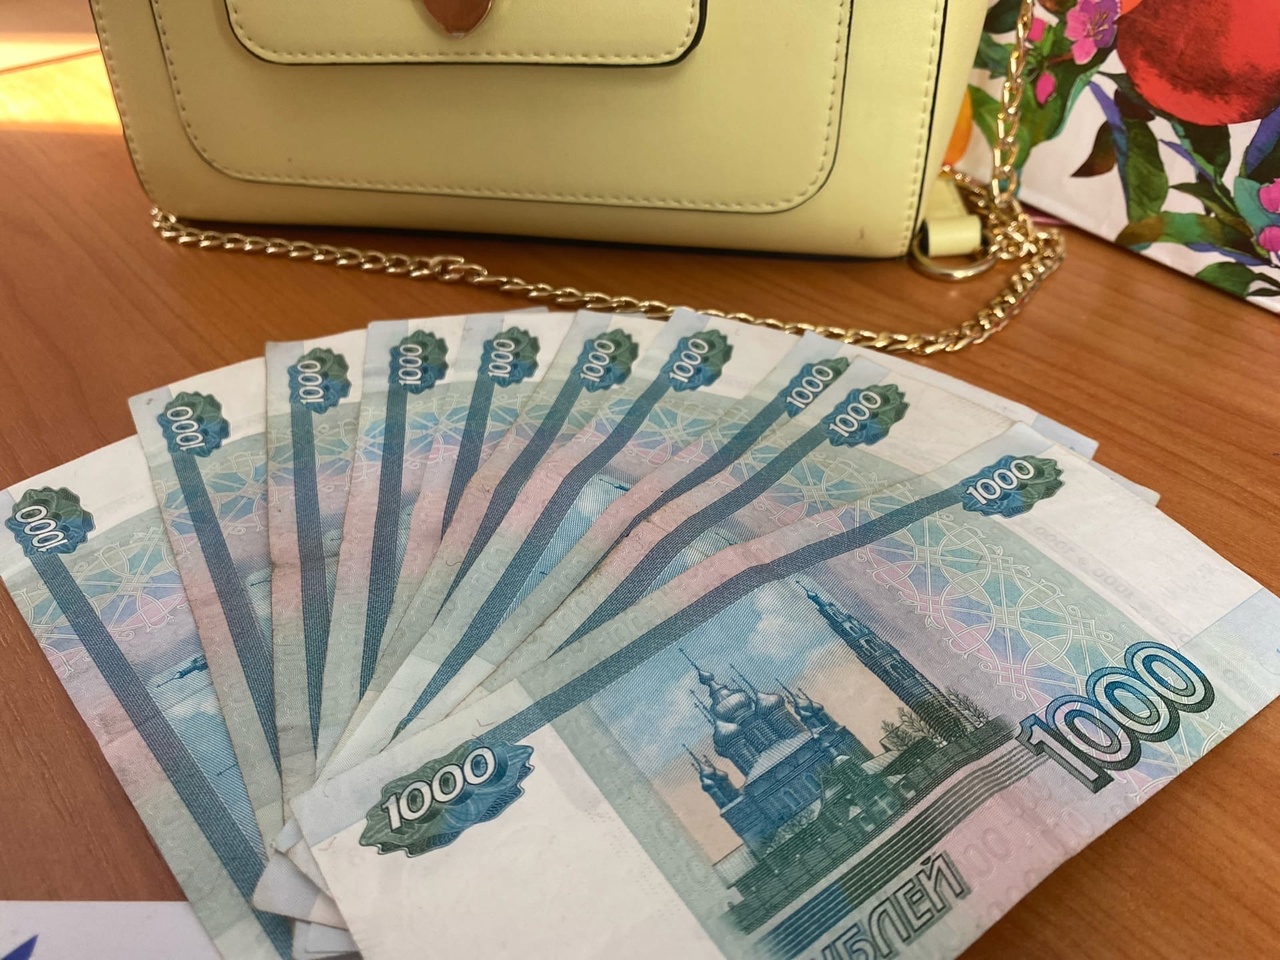  Школьники прыгают от радости: россиянам выплатят по 10 000 рублей к началу учебного года 